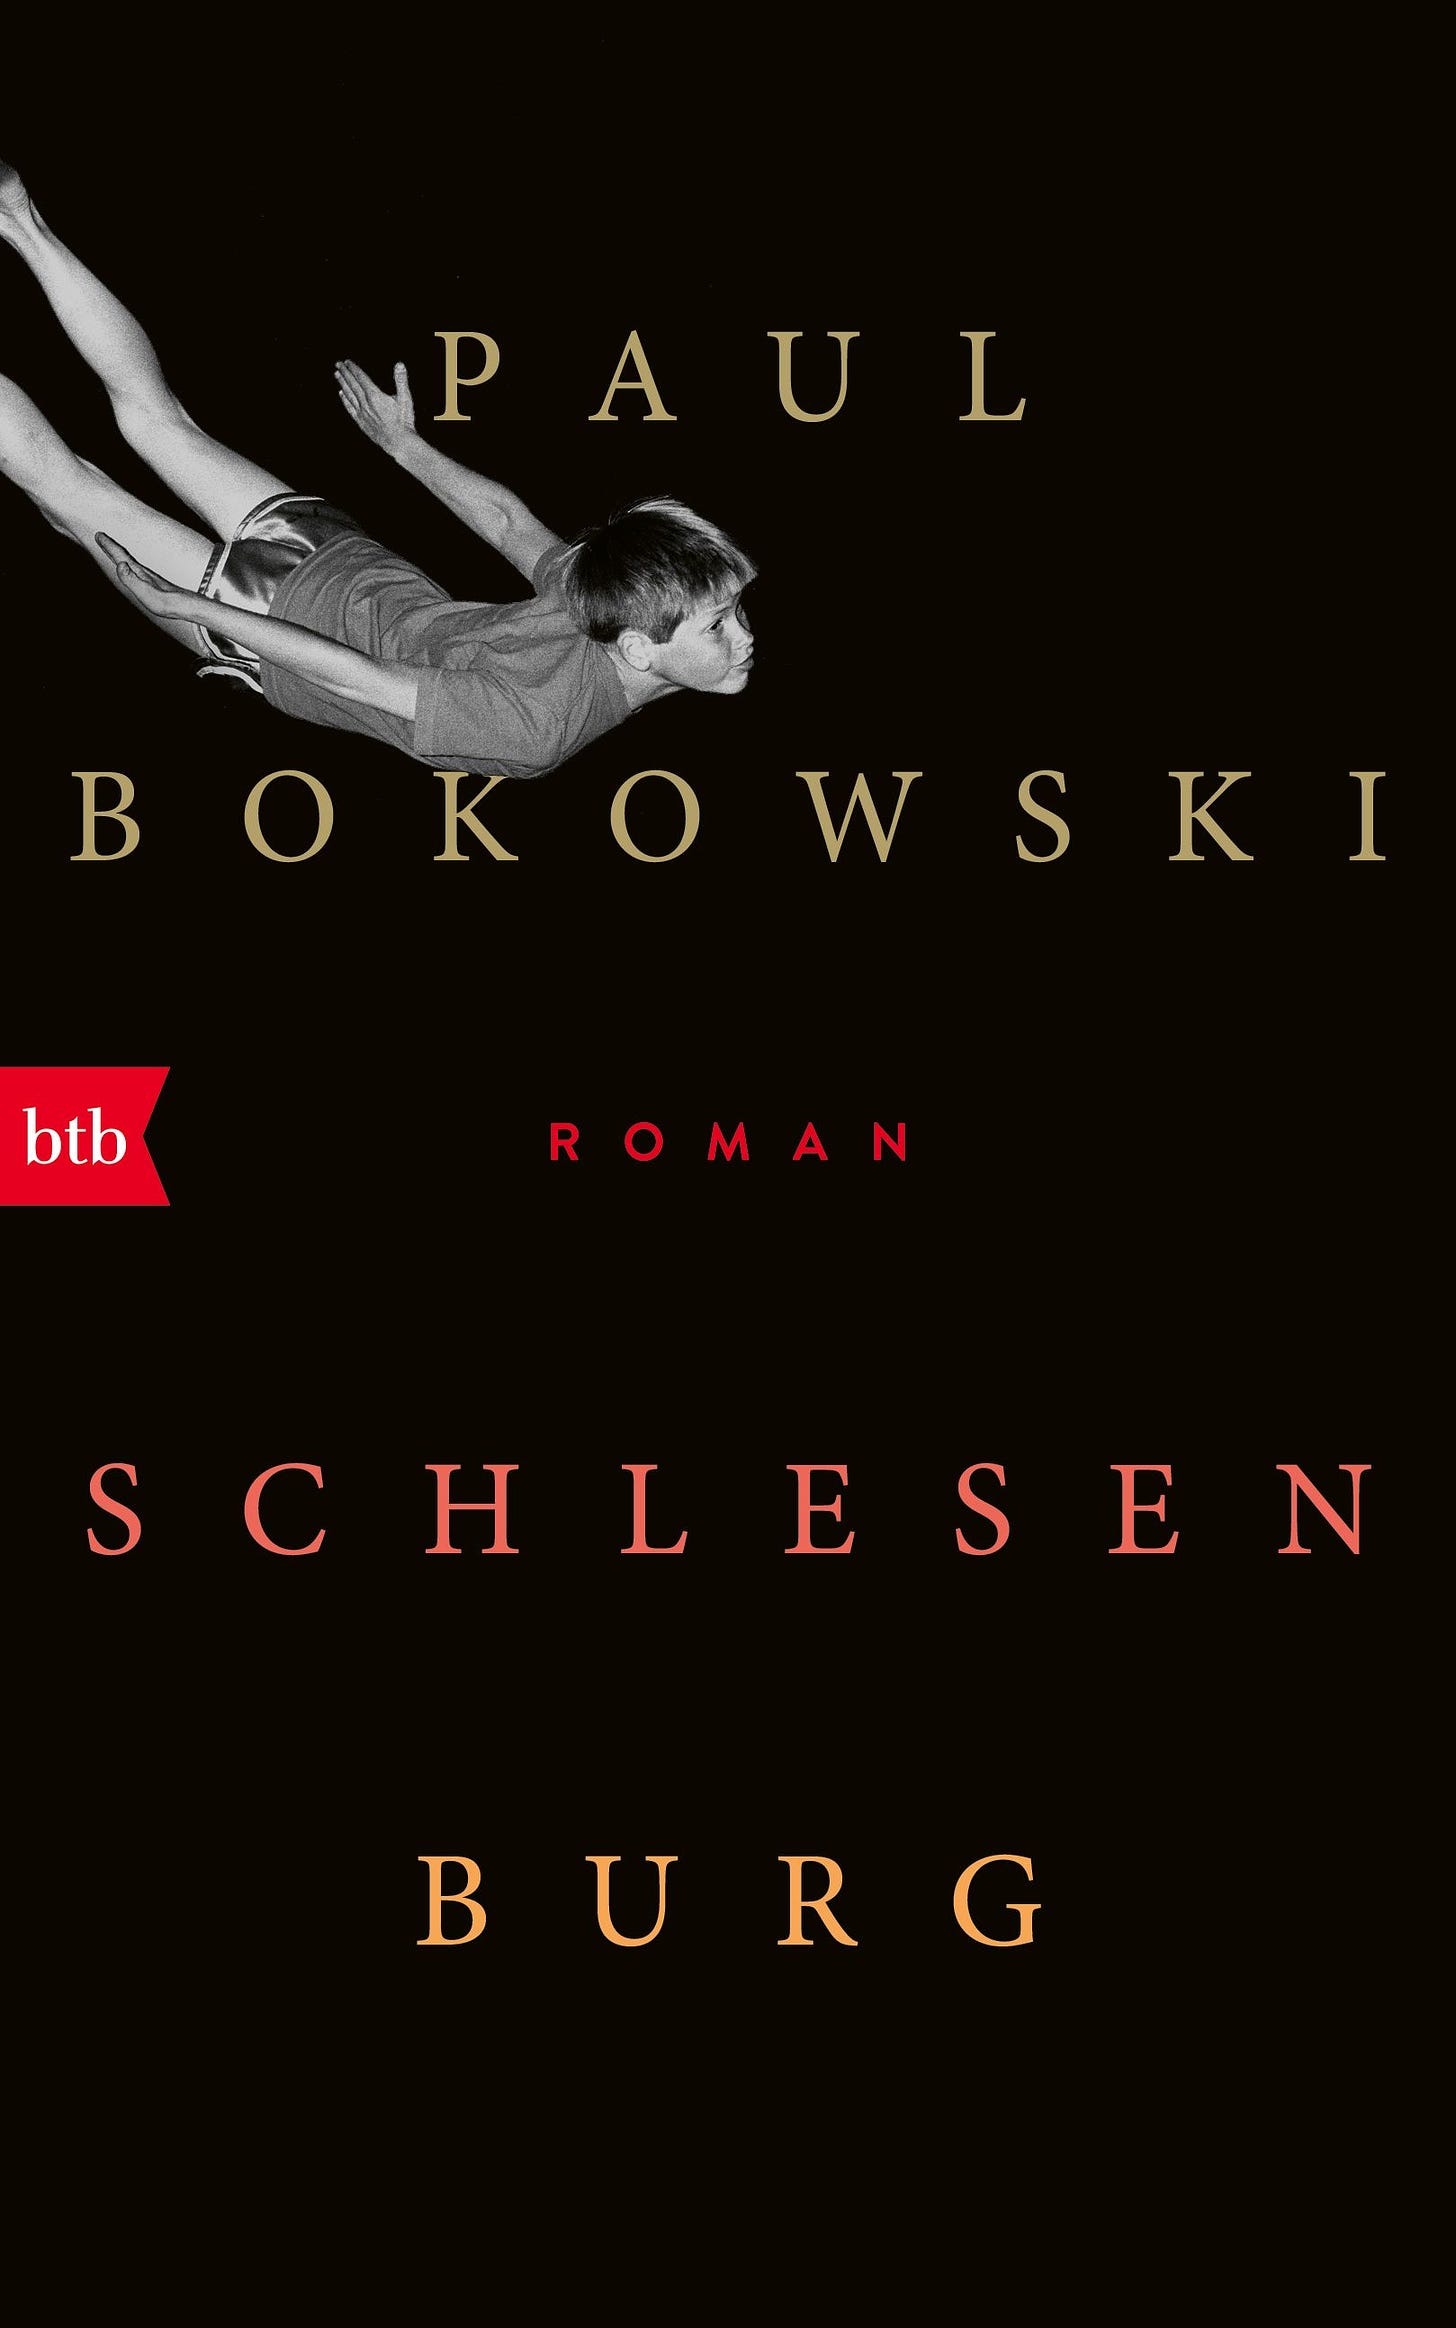 Buchcover von „Schlesenburg“: Vor schwarzem Hintergrund ist in den Titelinformationen ein Kind in Sportkleidung zu sehen (Schwarz-Weiß-Foto), das so aussieht, als würde es fliegen.